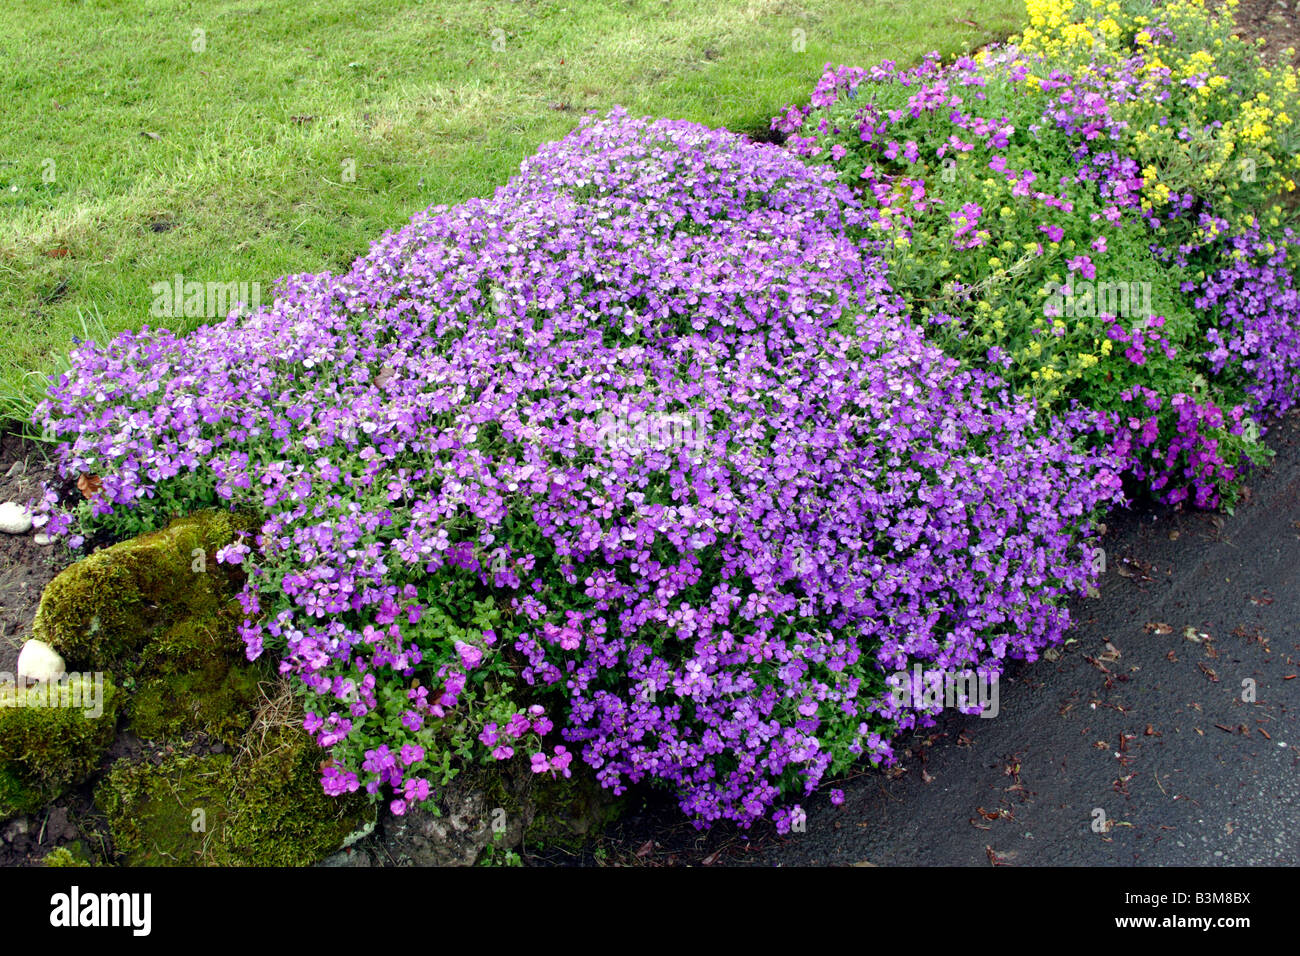 Rock cress (Aubrieta deltoidea) flowering in garden, England, UK Stock Photo